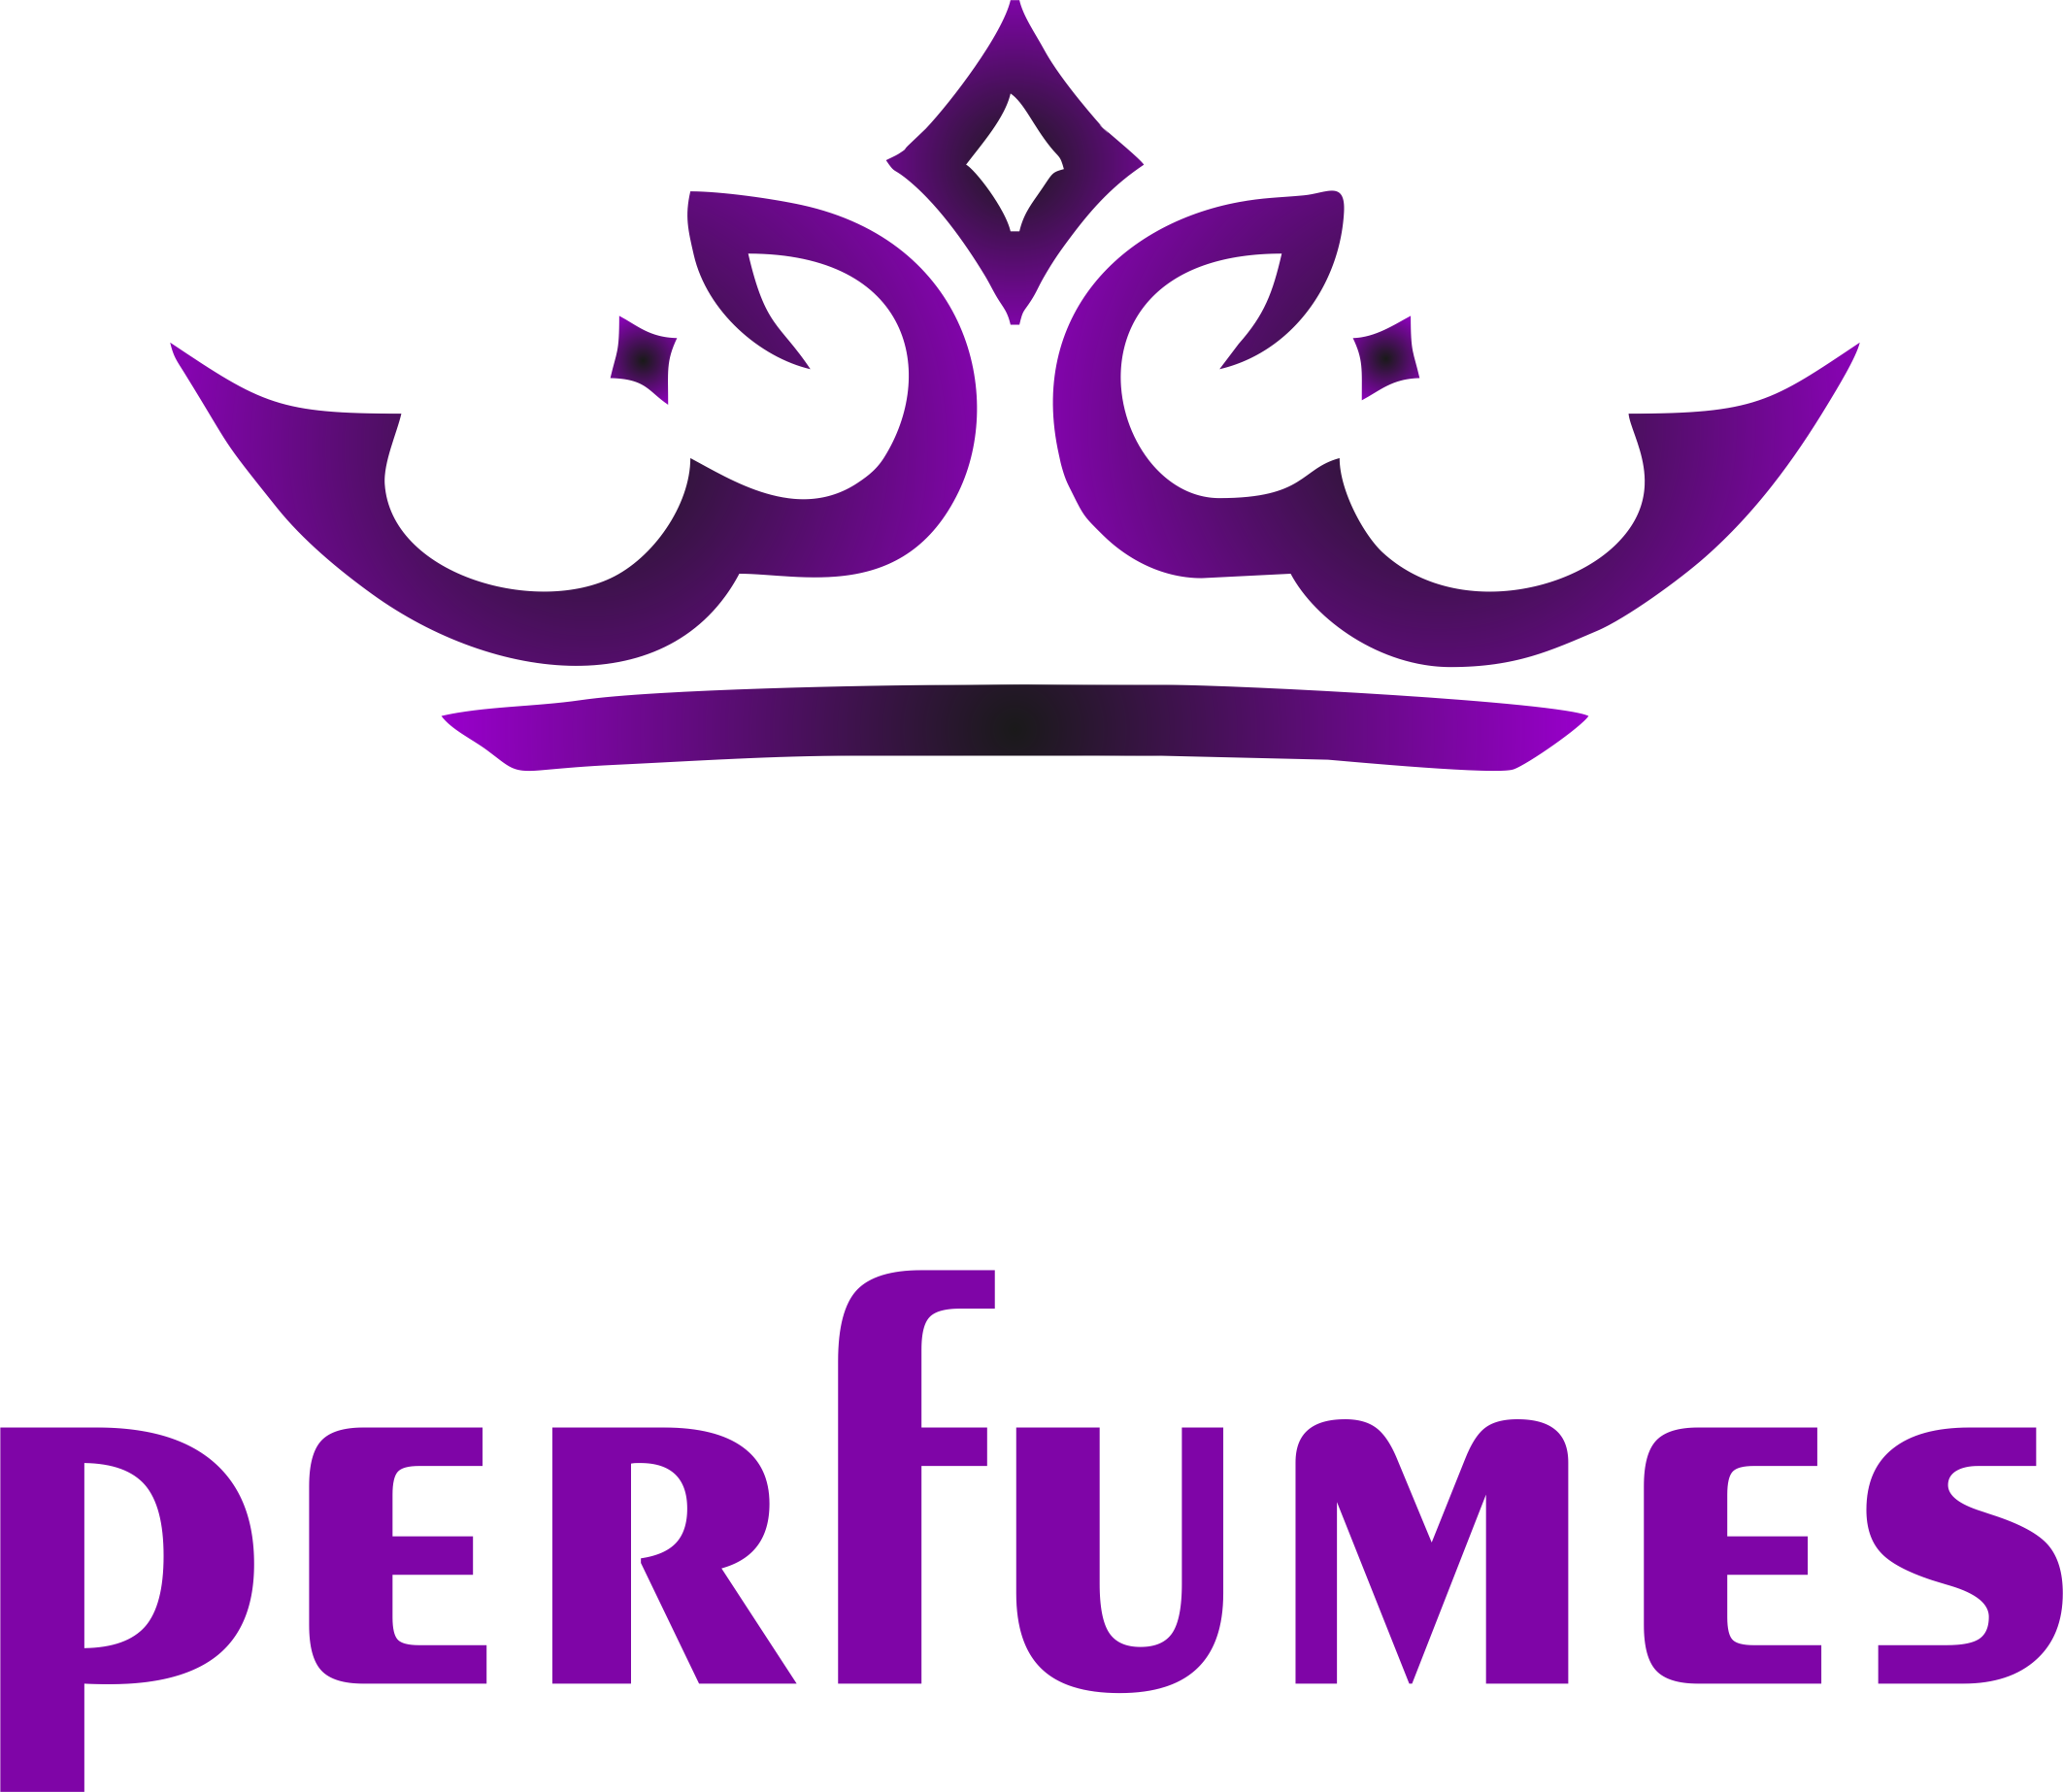 Crownperfumes